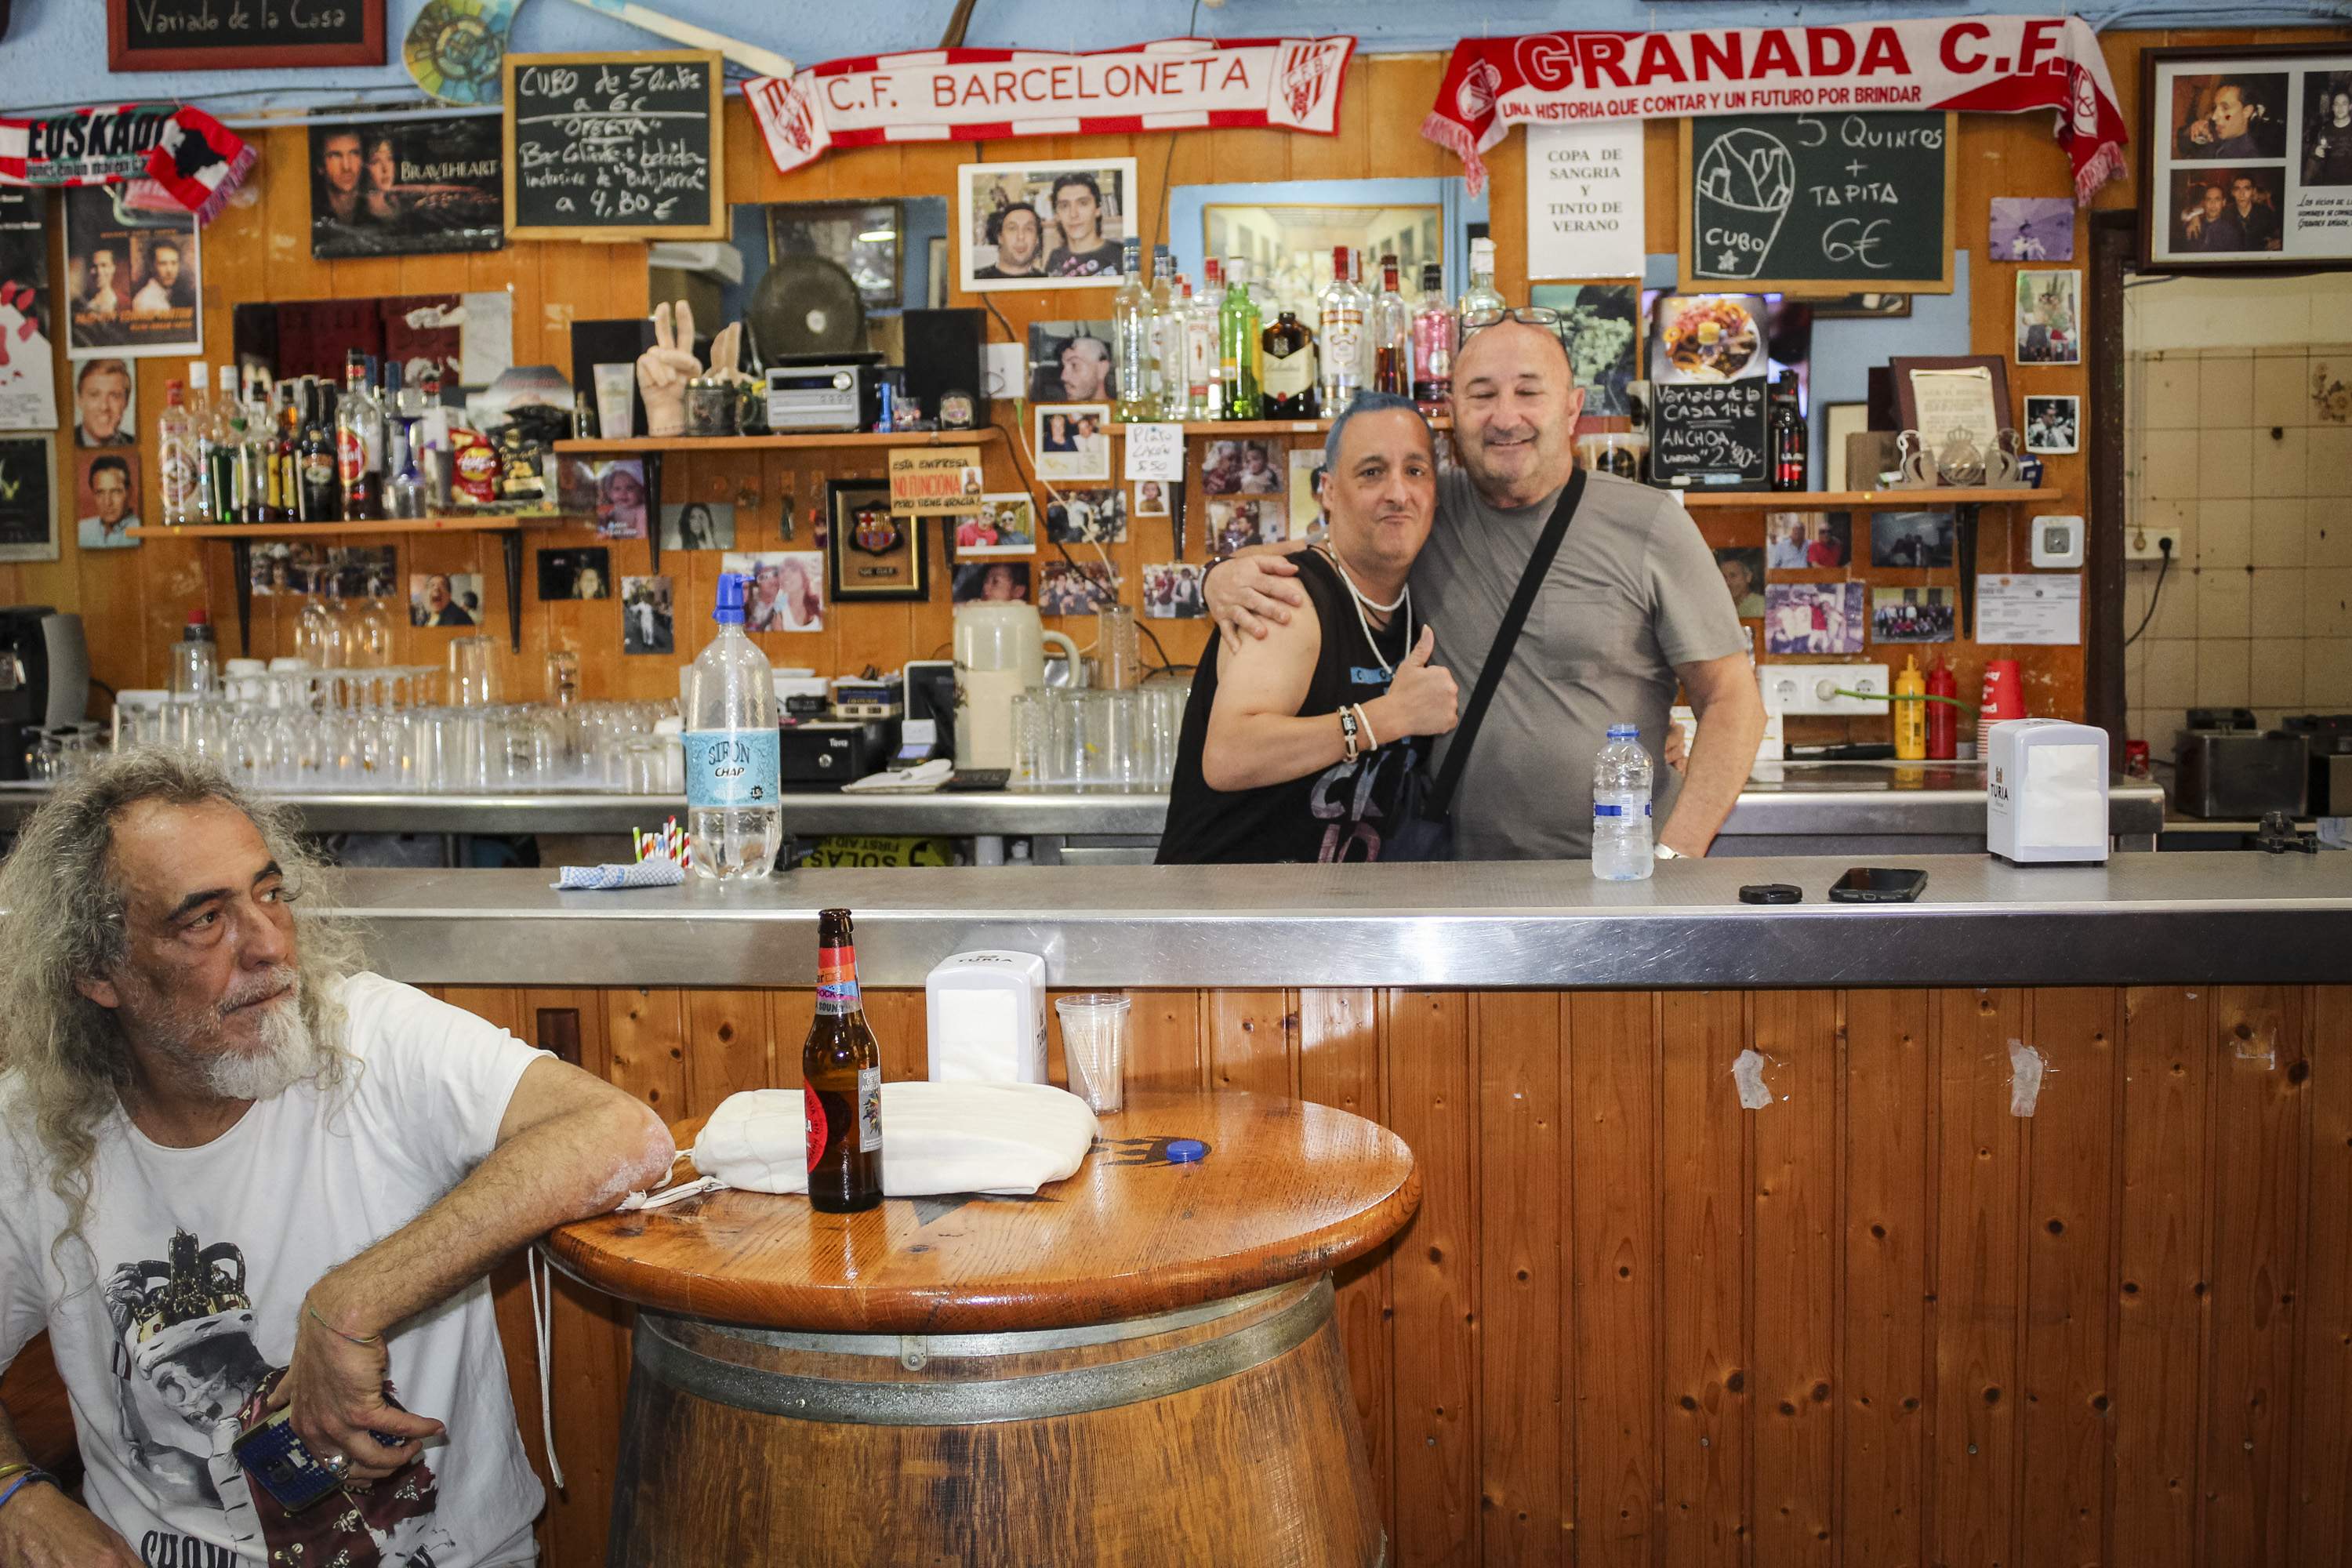 El bar emblemàtic de la Barceloneta que enamora el barri i ignora els turistes